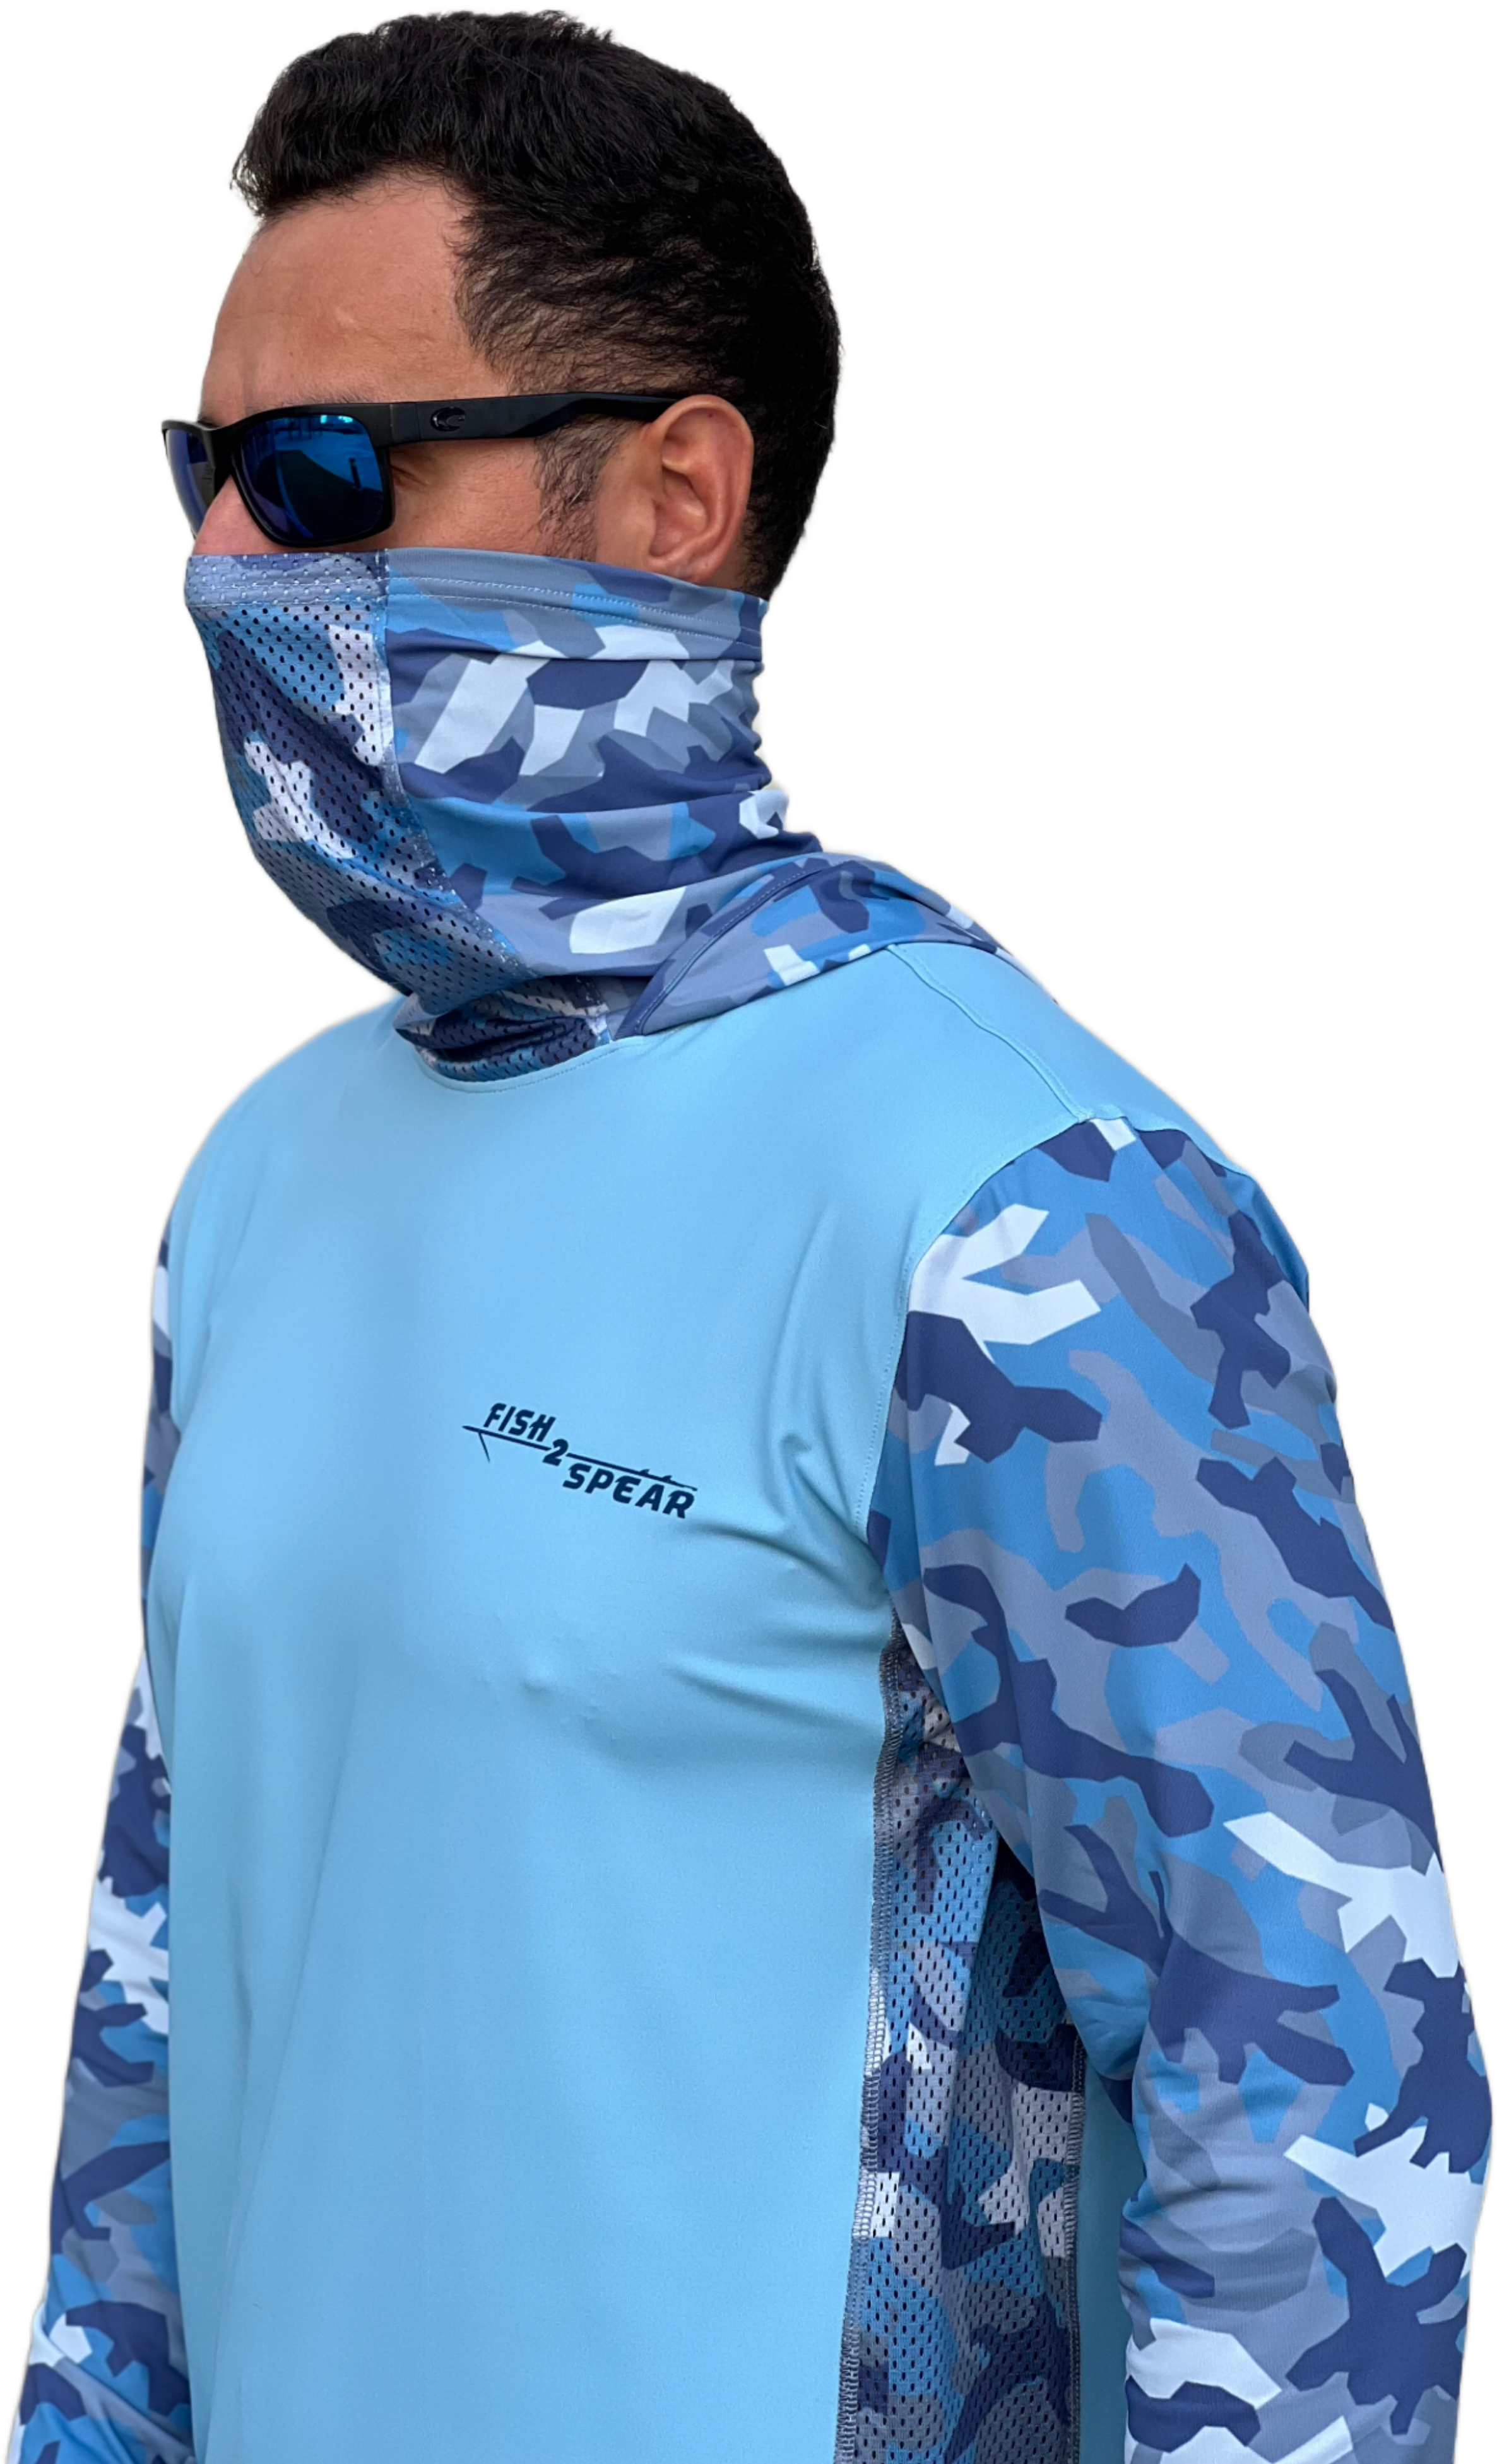 Kingfish, Hoodie, 50+UPF Long Sleeve T-shirt, Fishing Apparel, Fishing Shirt, UV T-Shirt